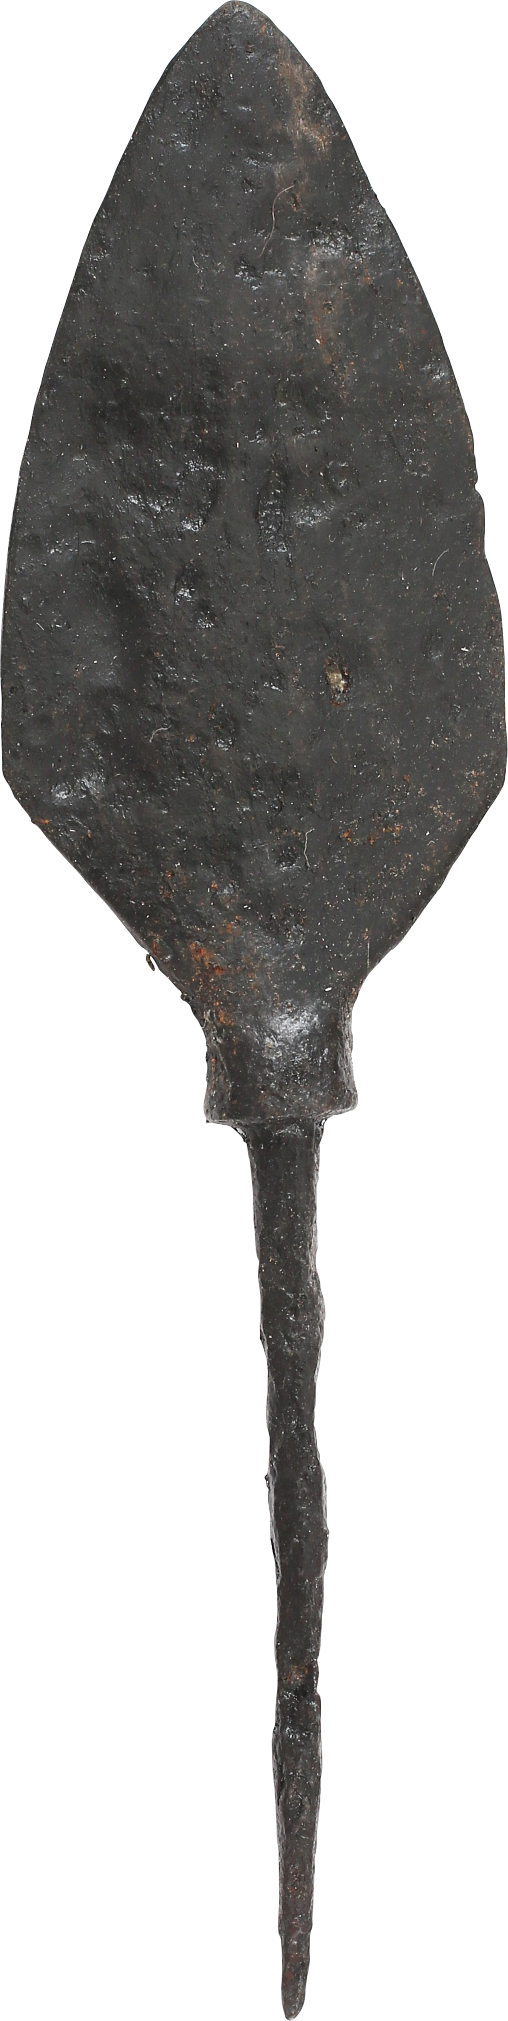 ANCIENT VIKING RAIDER'S TANGED ARROWHEAD, 850-1000 AD - Fagan Arms